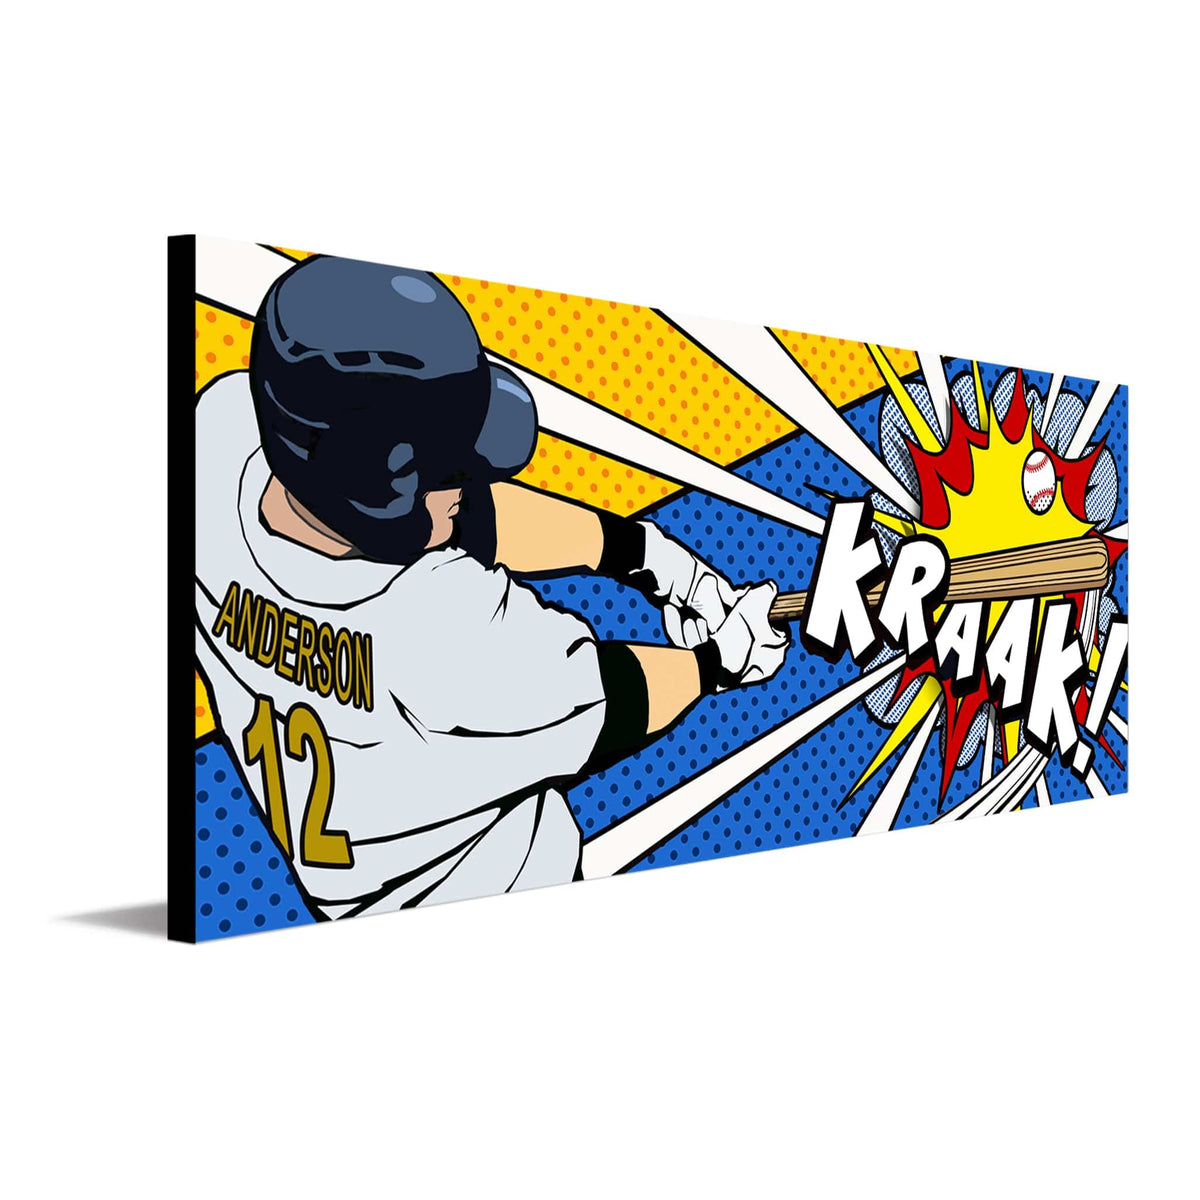 Personalized Baseball Gifts - Baseball Pop Art